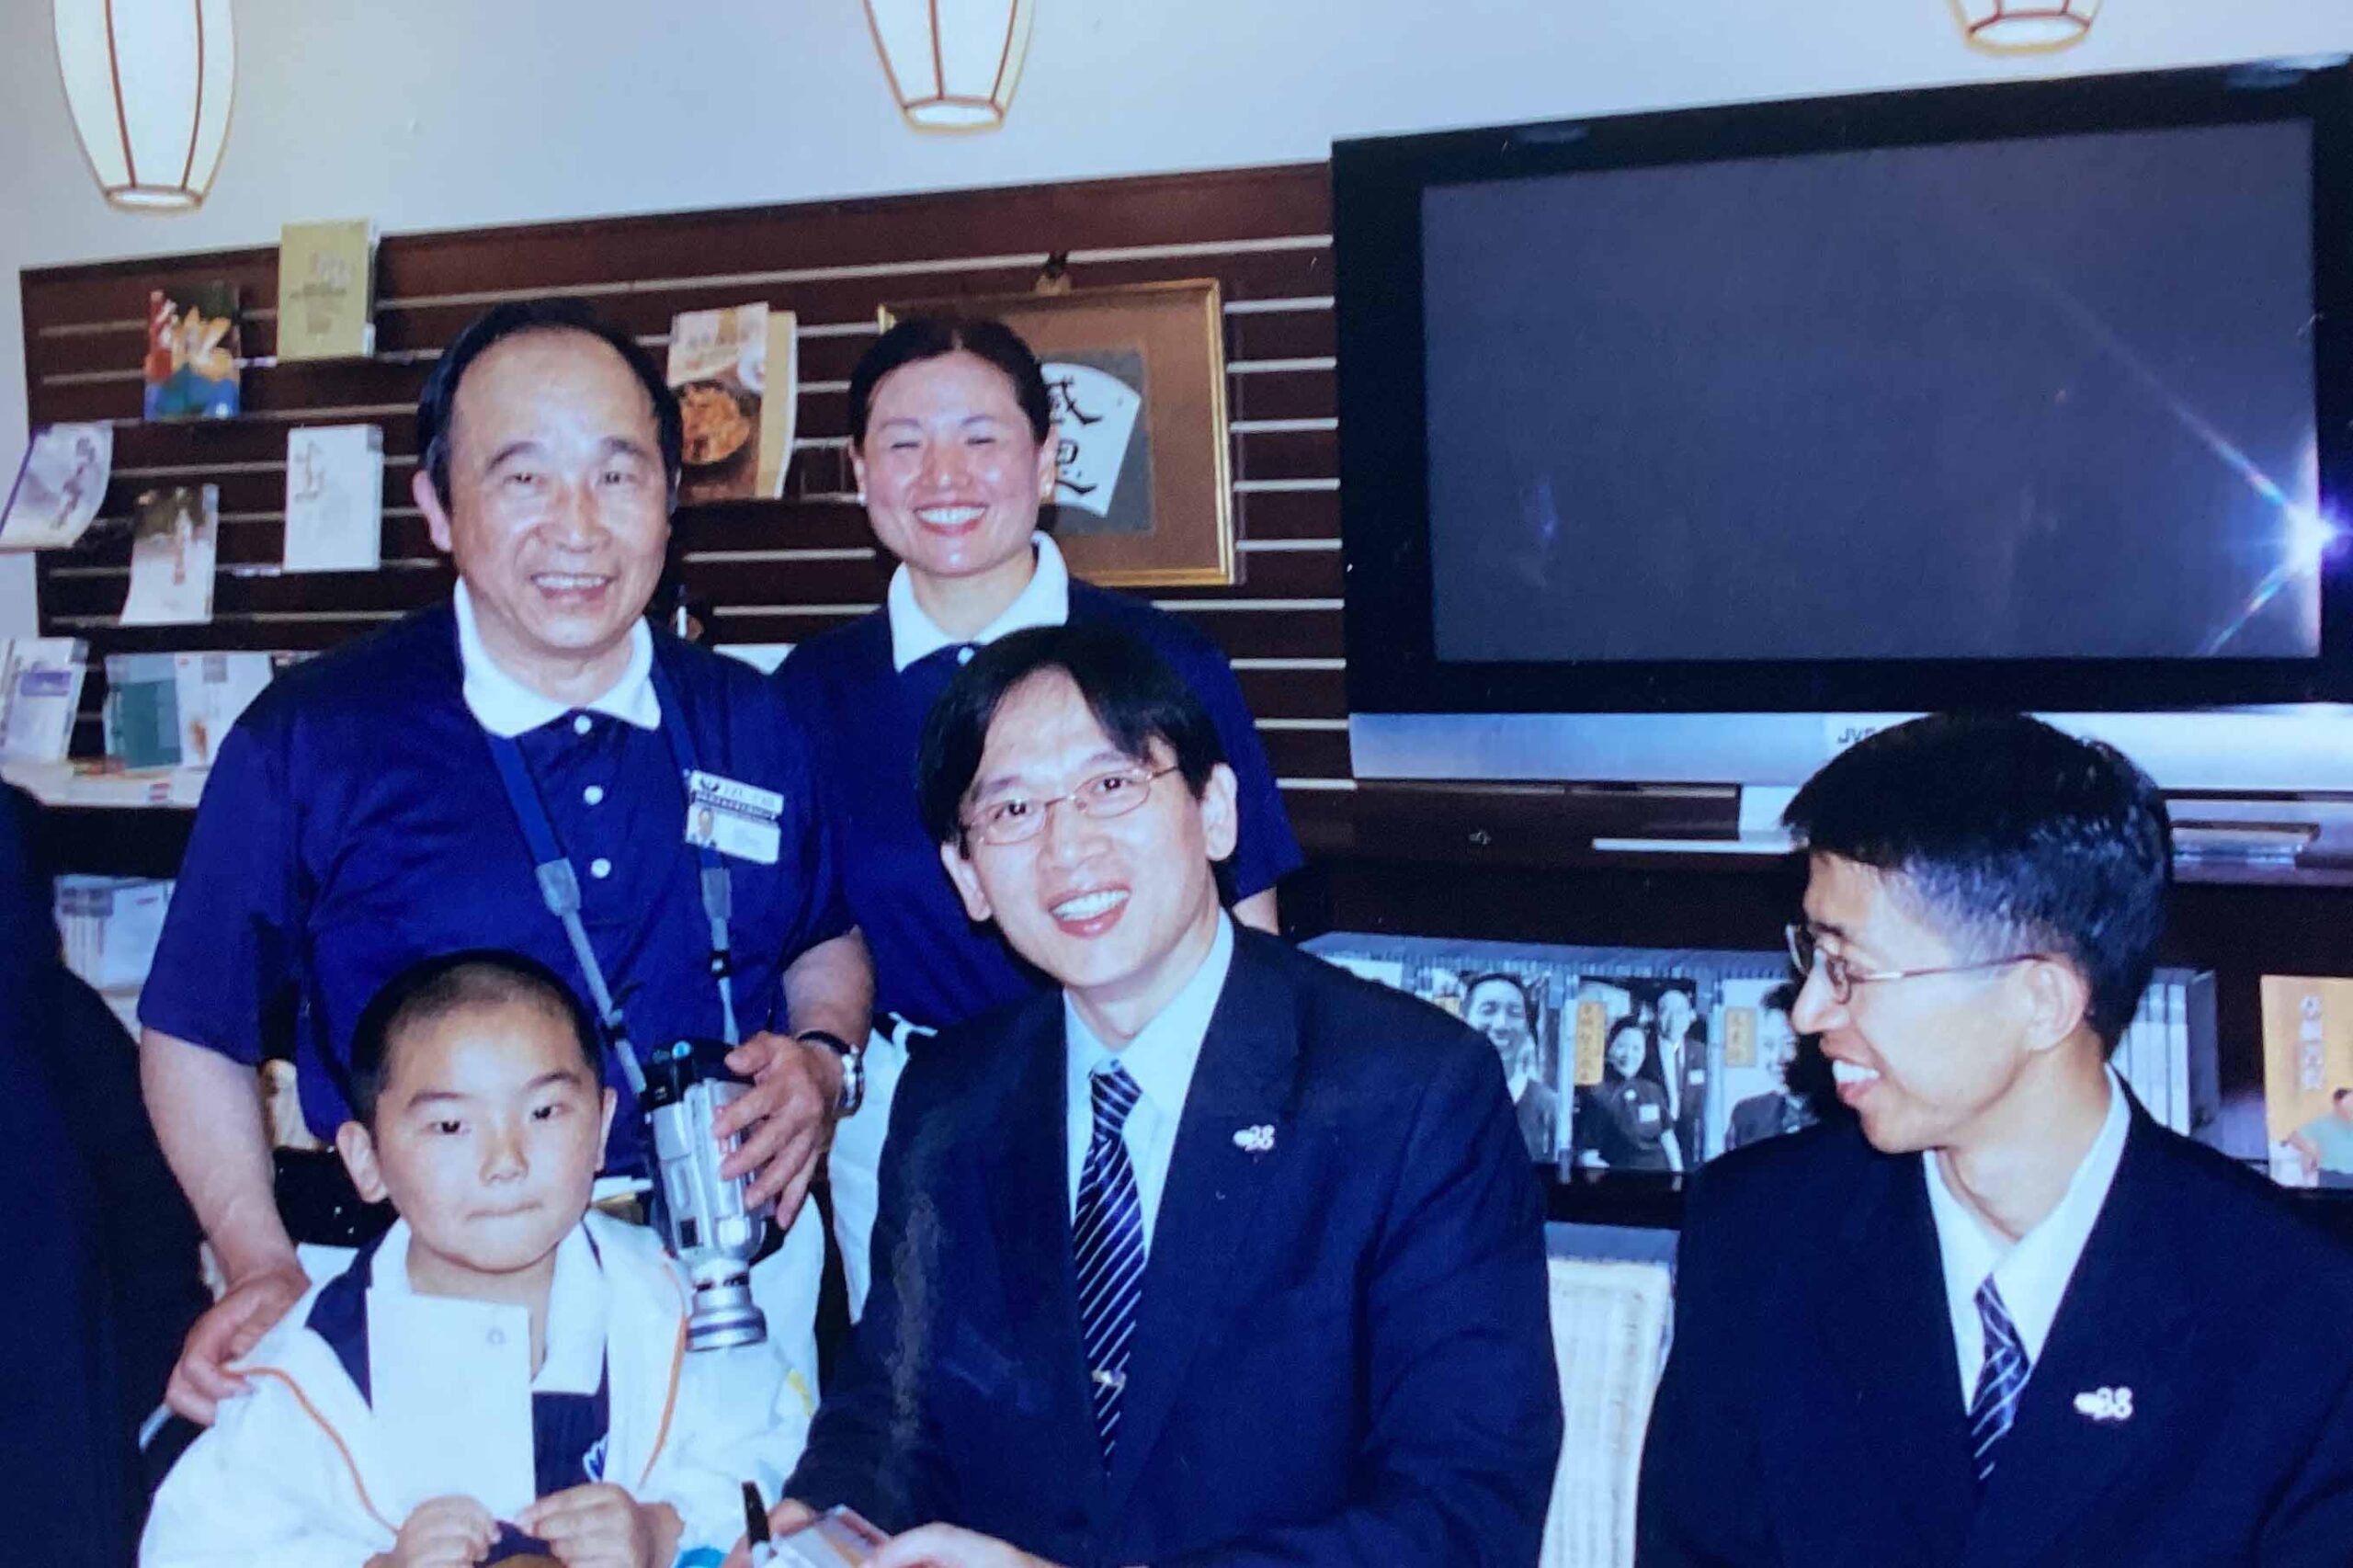 Old photo of Tzu Chi volunteer Jia Tian Liu